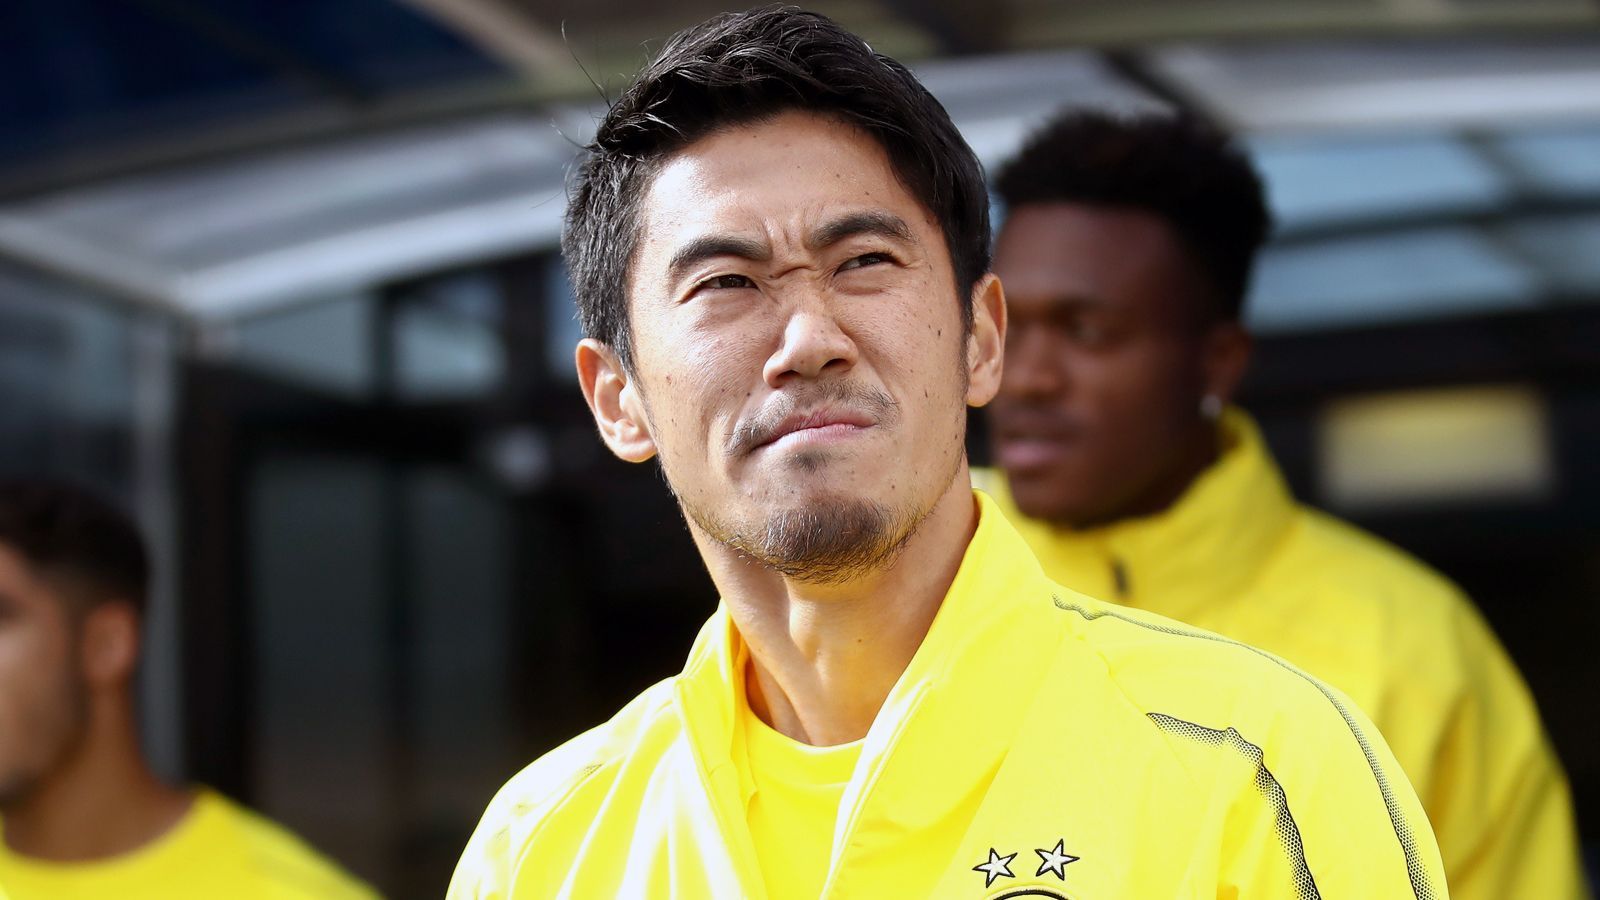 
                <strong>Shinji Kagawa (Borussia Dortmund)</strong><br>
                Beim Bundesliga-Tabellenführer Borussia Dortmund läuft es auf den ersten Blick perfekt - aber eben nicht für alle Profis. So stehen einige, verdiente BVB-Stars im Abseits und dürfen noch im Januar gehen. Einer von ihnen ist Shinji Kagawa, Nationalspieler und WM-Teilnehmer Japans. "Shinji ist ein verdienter Spieler von uns, er war Meisterspieler. Er ist natürlich nicht zufrieden. Wir haben einige Gespräche geführt, wenn etwas auf dem Tisch läge, würden wir uns freundschaftlich damit beschäftigen. Aber wir hätten auch kein Problem, wenn er bleibt", sagte Sportdirektor Michael Zorc der "Bild". Laut dem Boulevard-Blatt dürfe der 29-Jährige für zwei bis drei Millionen Euro gehen. In der laufenden Saison kam Kagawa zuletzt am fünften Spieltag in der Bundesliga zum Einsatz. Sein Vertrag läuft bis 2020.  
              